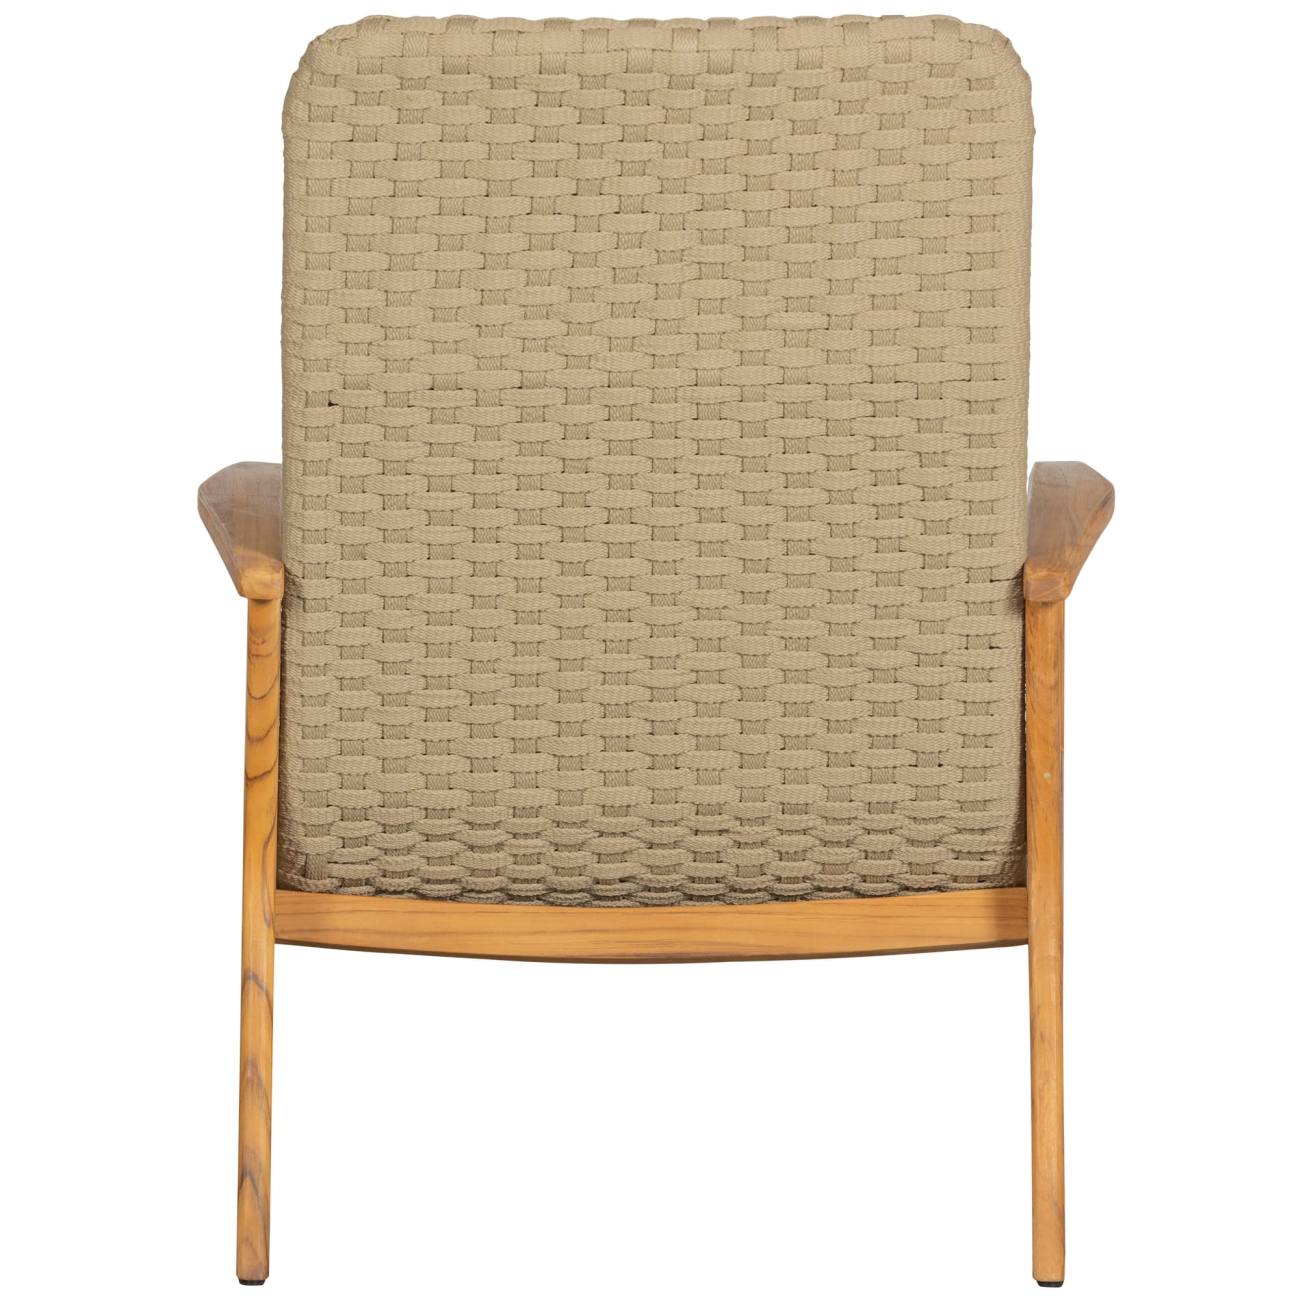 Der Gartensessel Stony überzeugt mit seinem modernen Design. Gefertigt wurde er aus geflochtenem Seil, welches einen Sand Farbton besitzt. Das Gestell ist aus Teakholz und hat eine natürliche Farbe. Der Sessel besitzt eine Sitzhöhe von 34 cm.